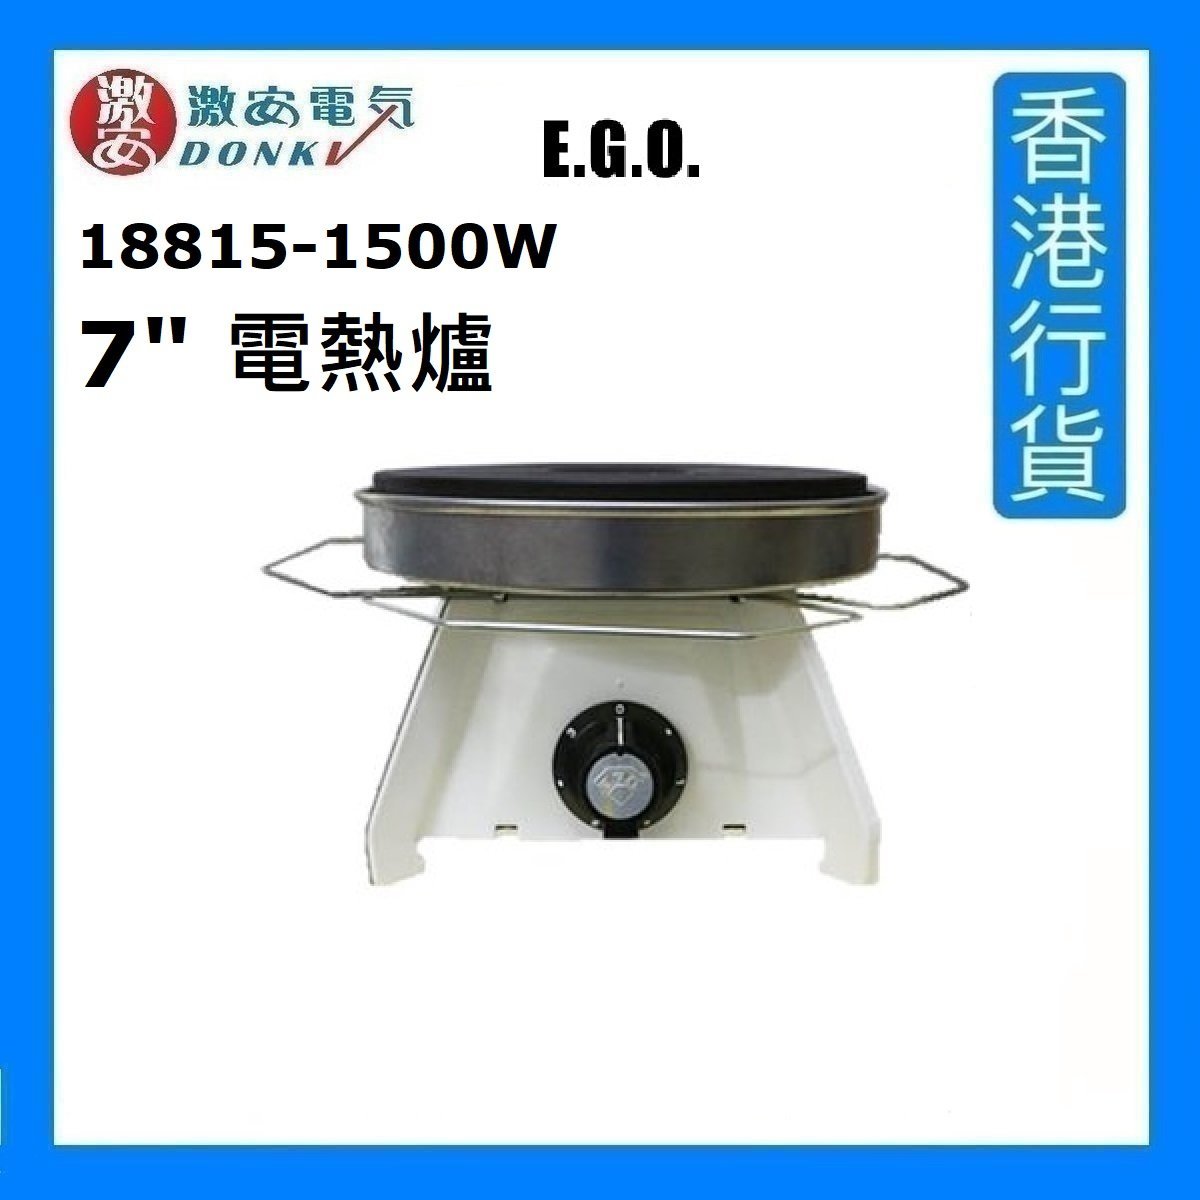 18815-1500W 7" 電熱爐 [香港行貨]